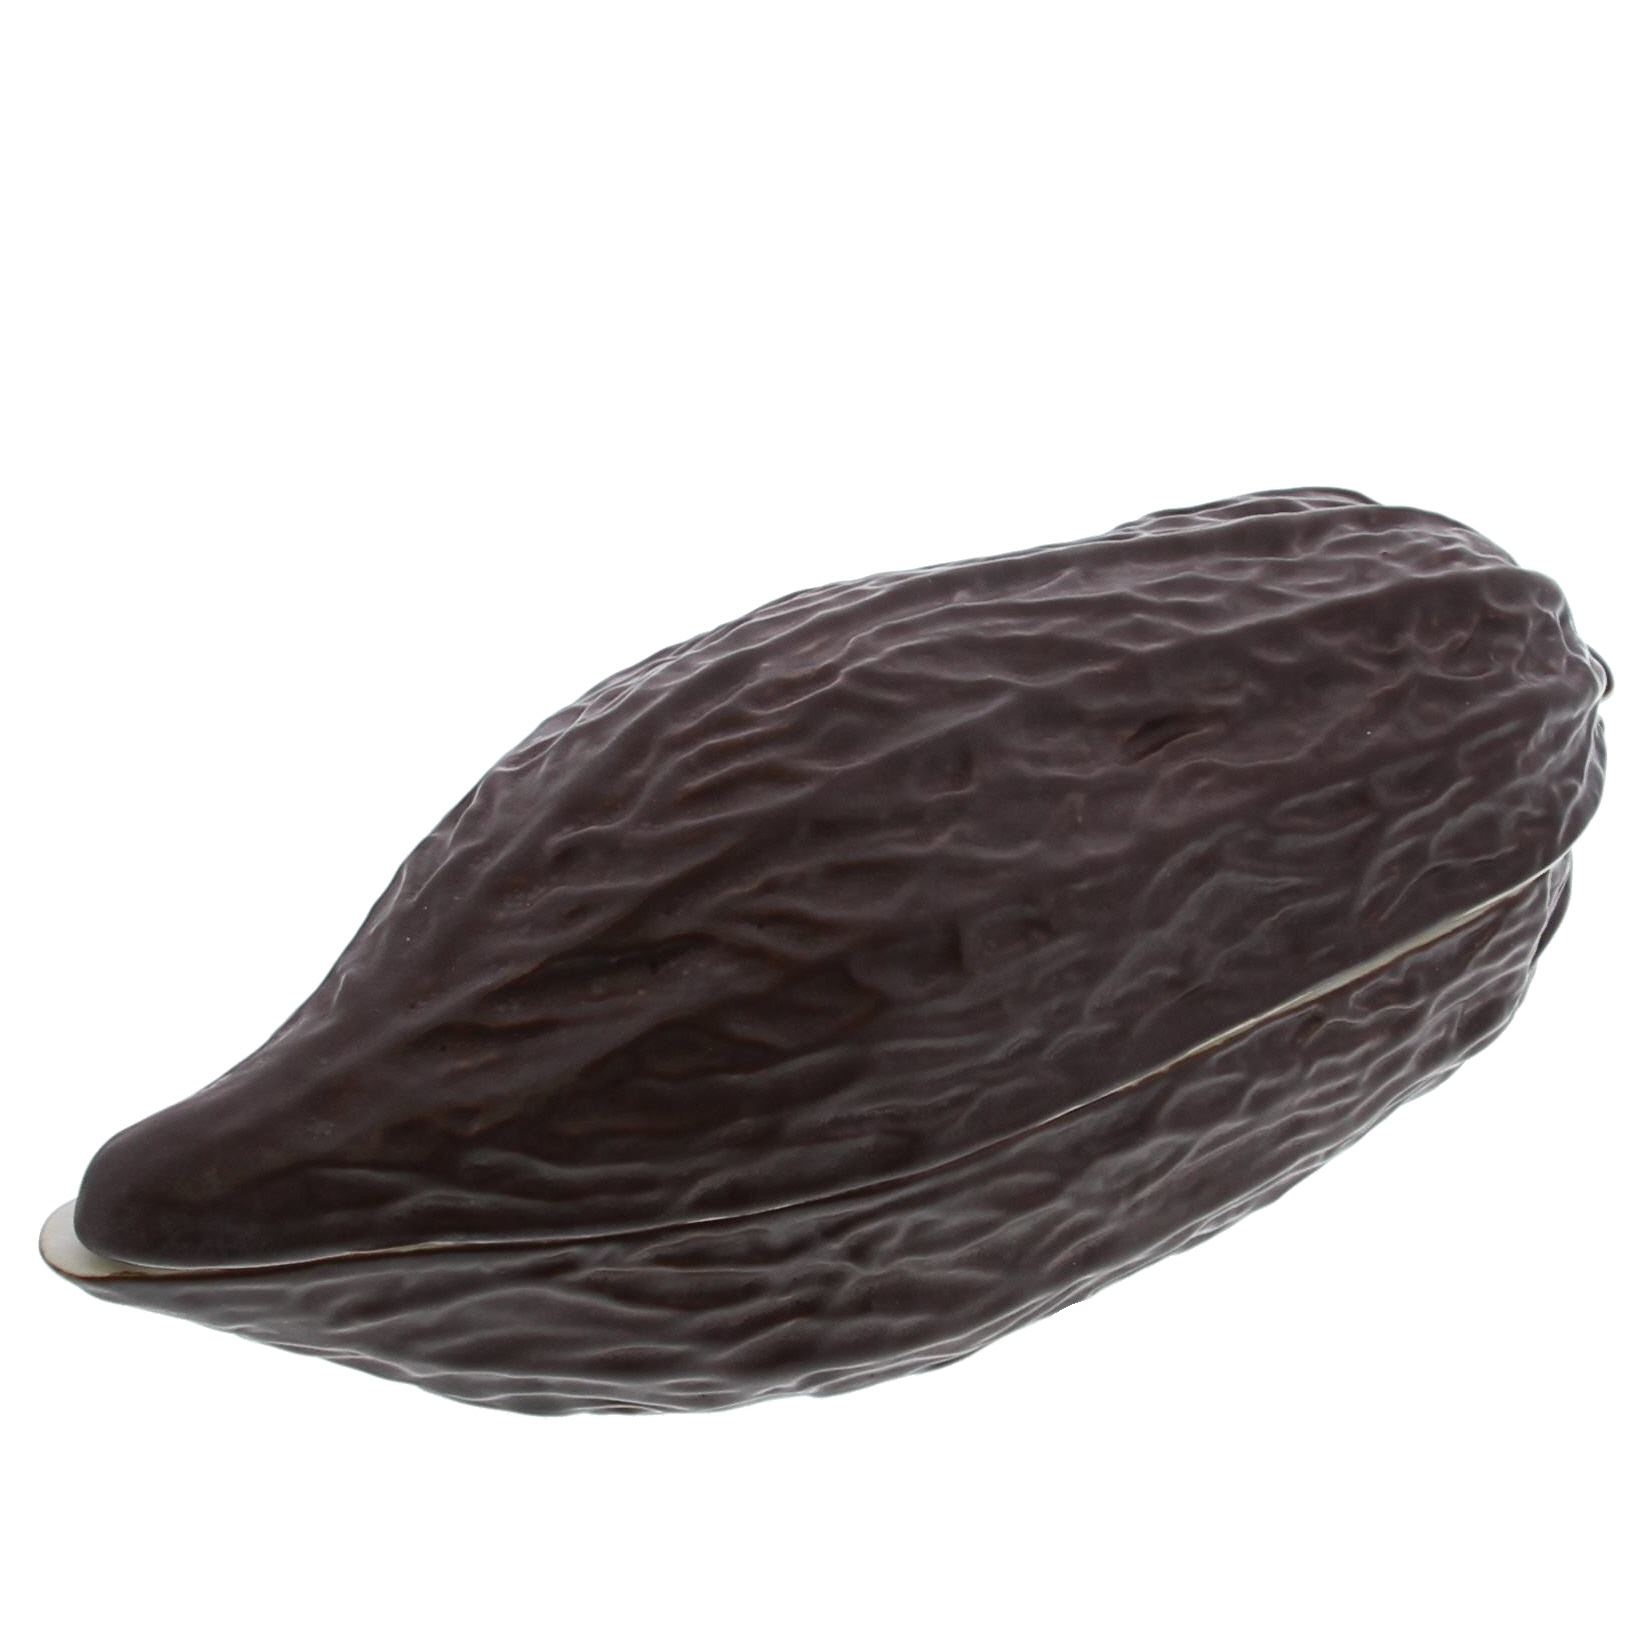 Cacaoboon bonbonnière  - verkrijgbaar in 2 verschillende maten